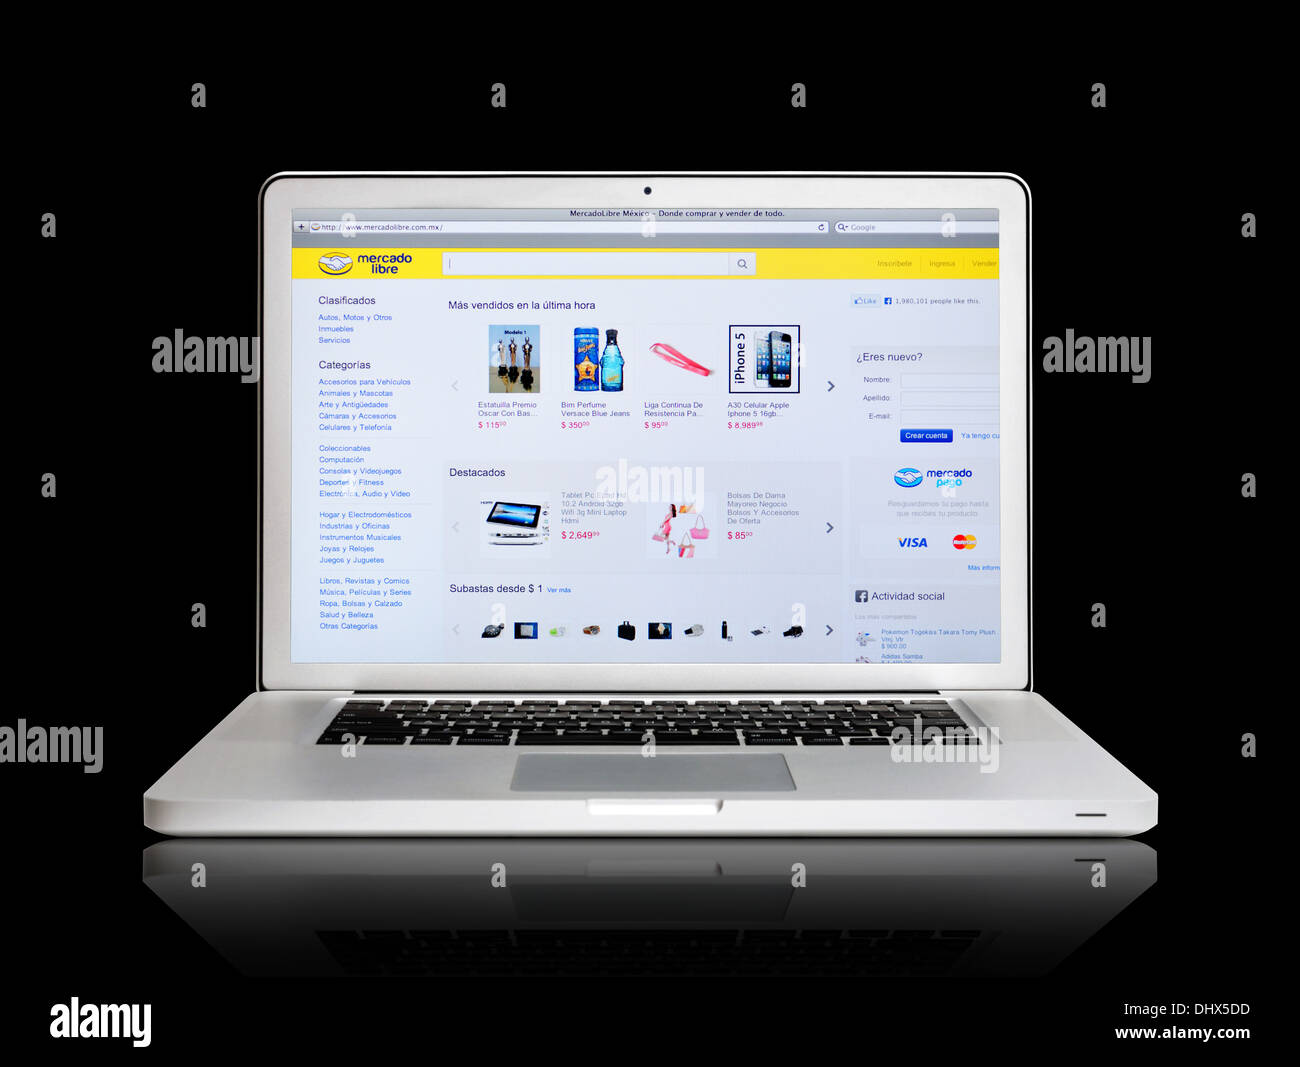 Mercado Libre online shopping website on laptop screen Stock Photo